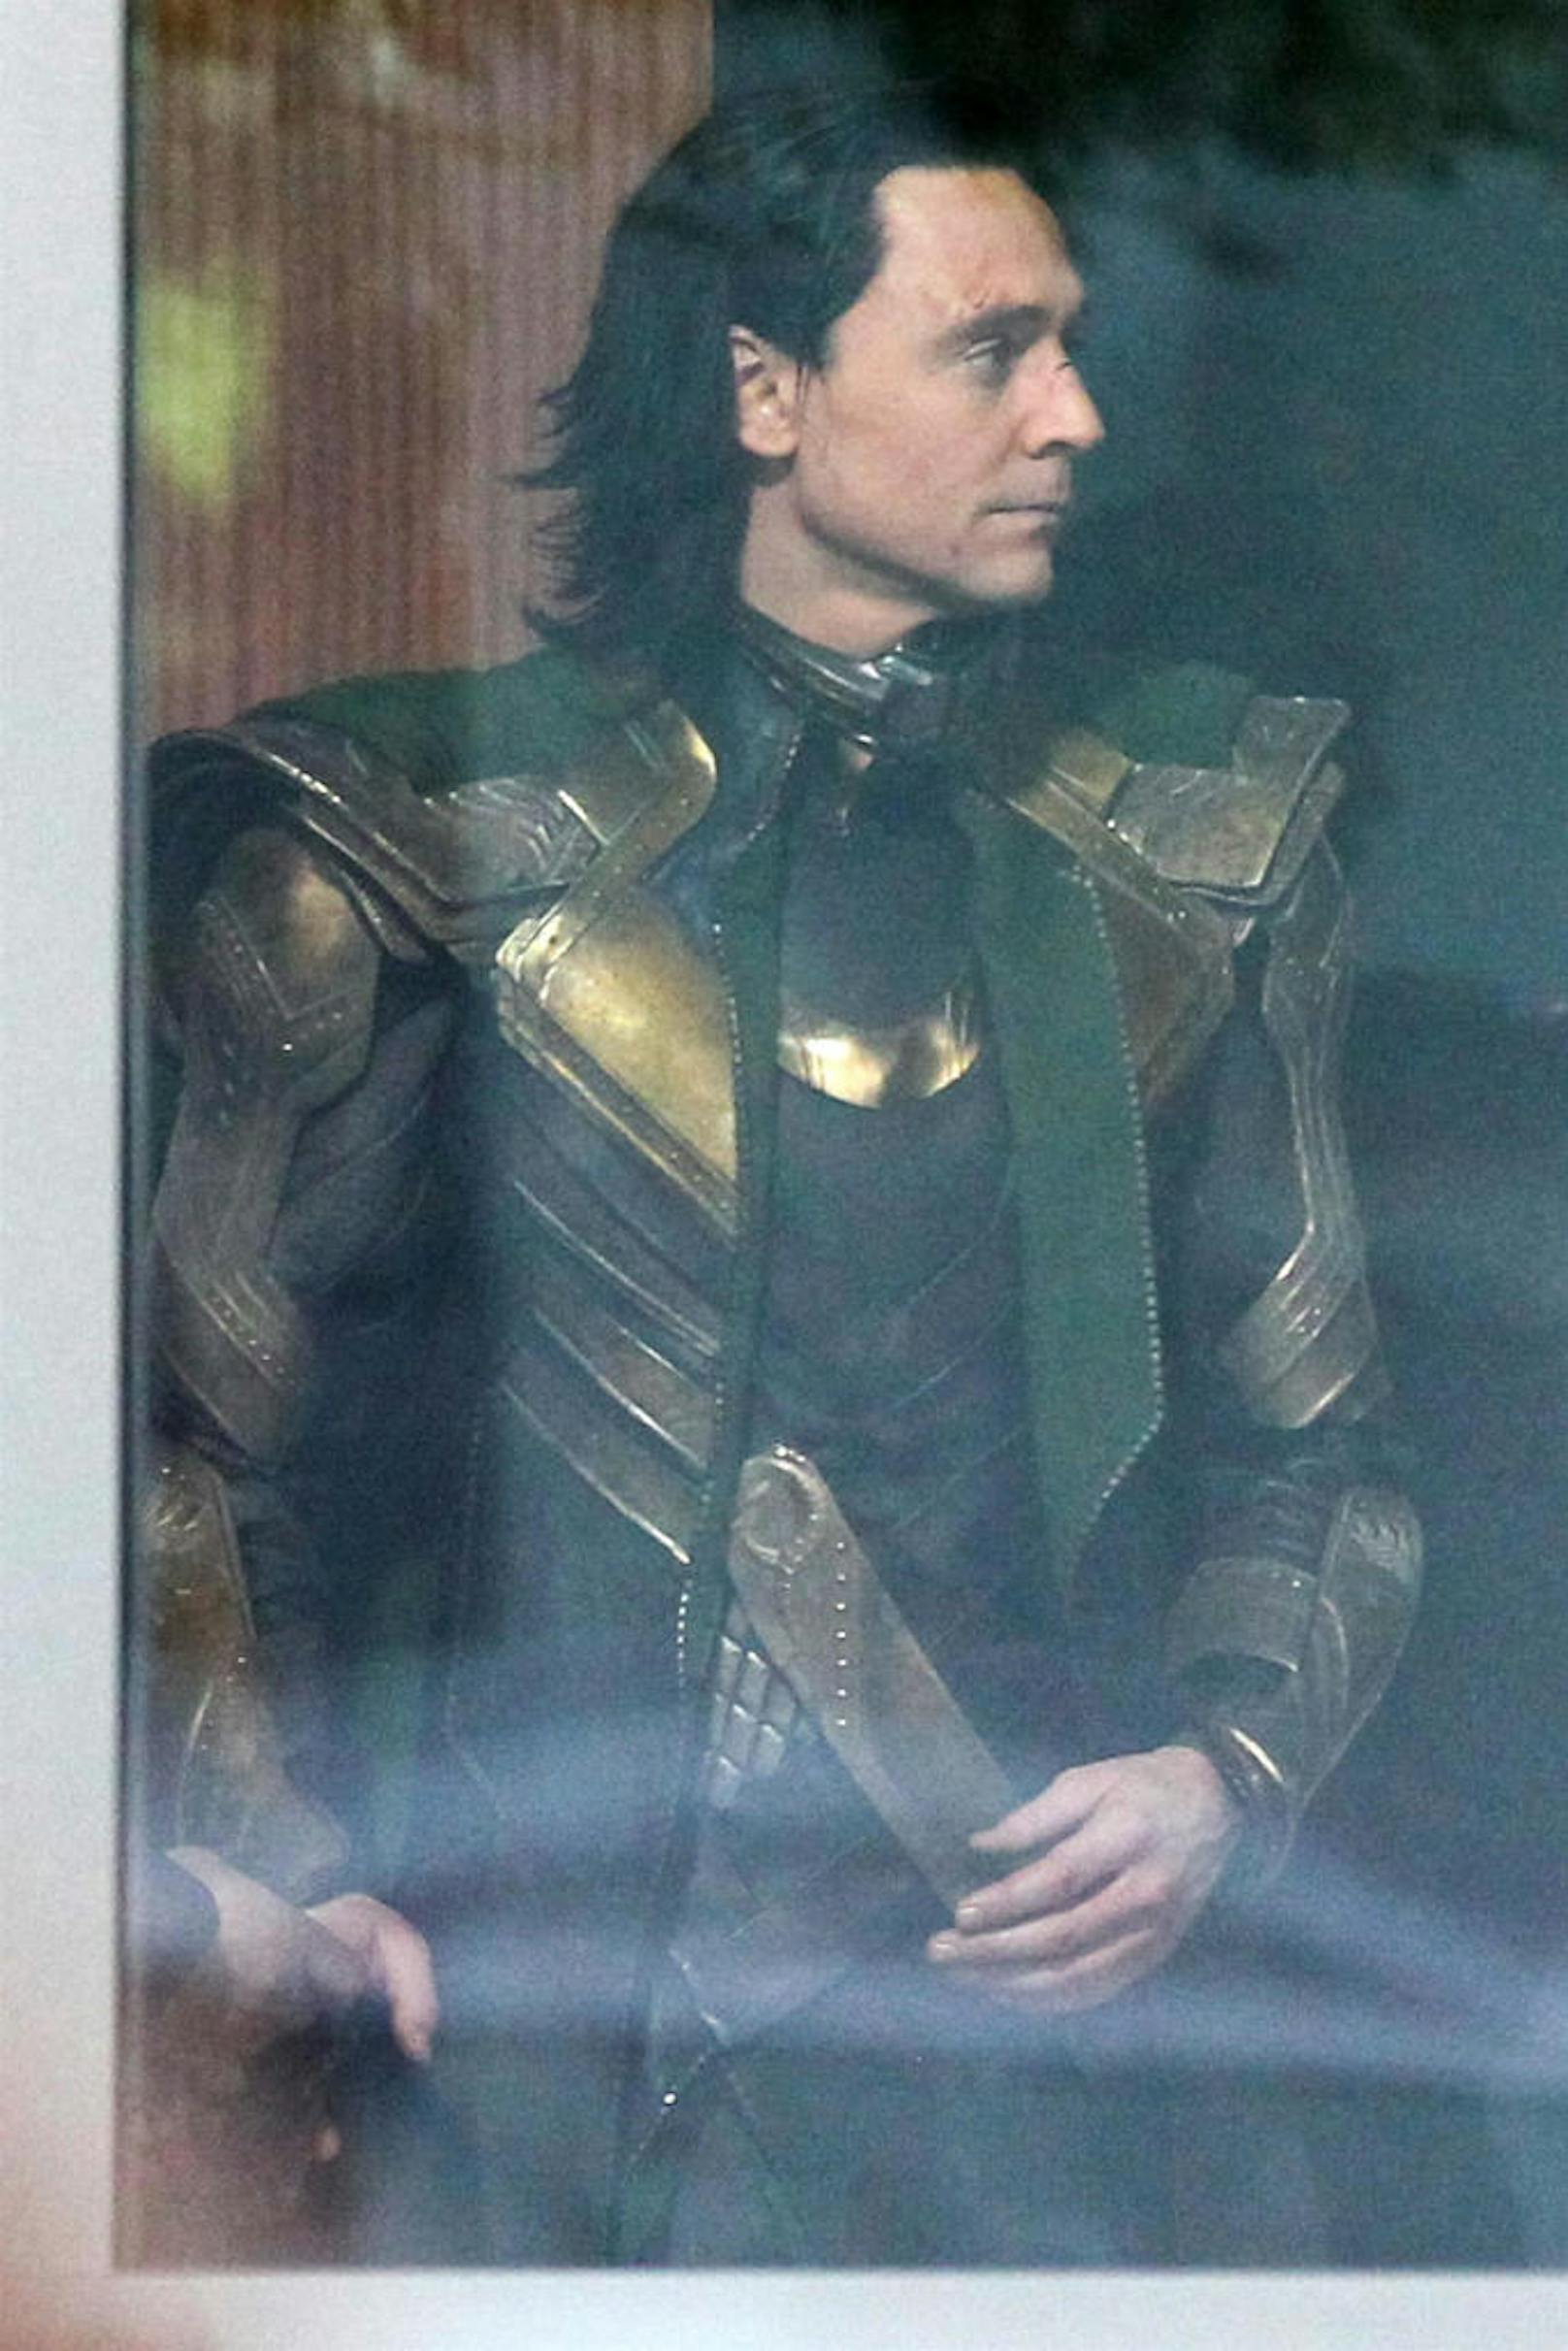 Gezeichnet: So wie die Maske Loki zugerichtet hat, war schon vorab klar, dass er in Thor: Ragnarok 
 einige Schläge abbekommt.